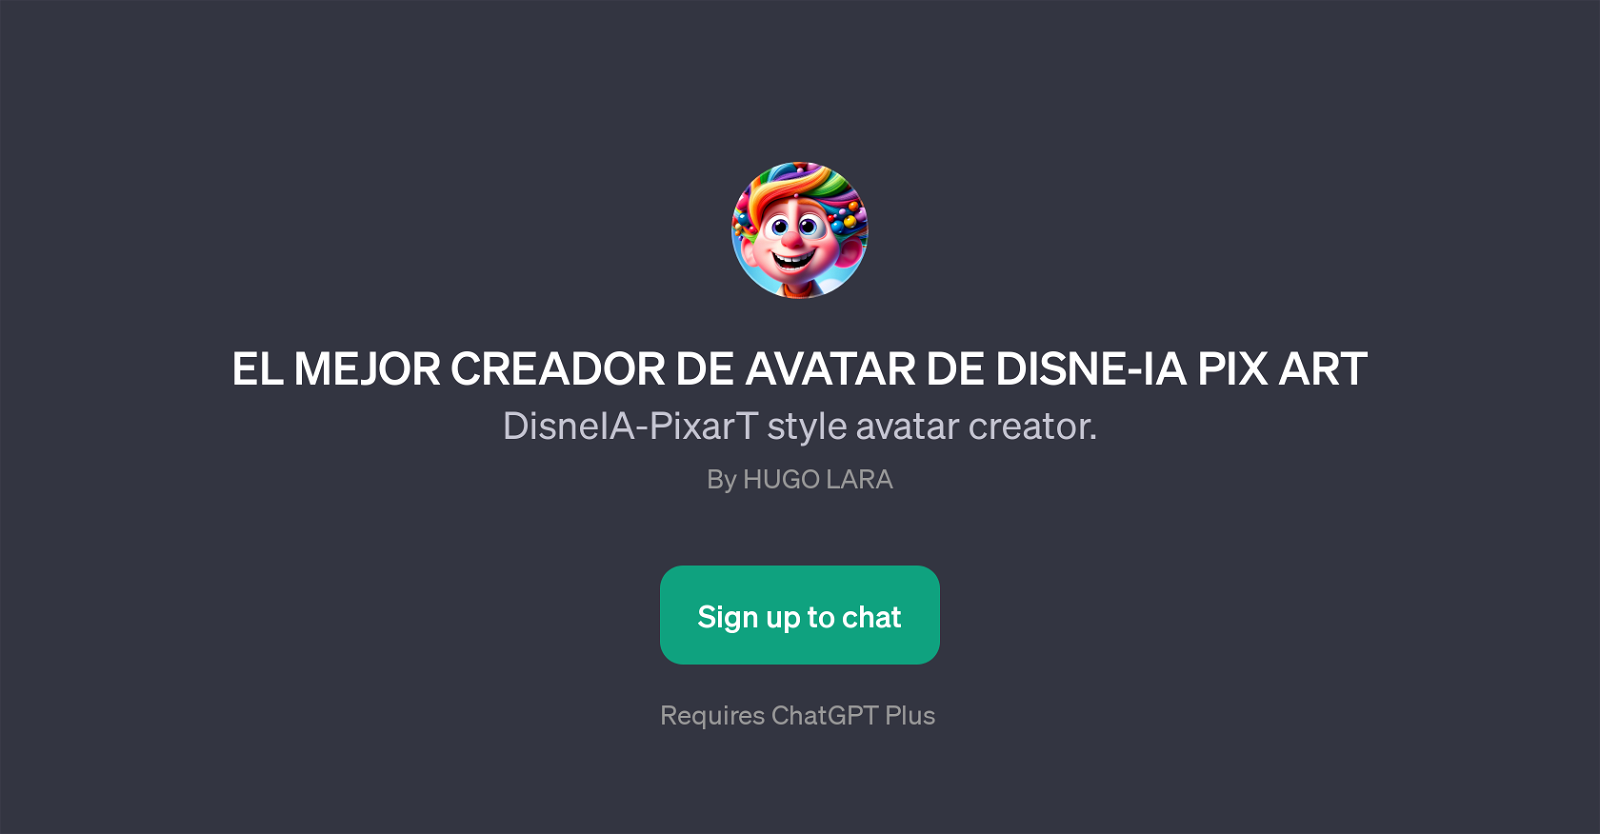 EL MEJOR CREADOR DE AVATAR DE DISNE-IA PIX ART website